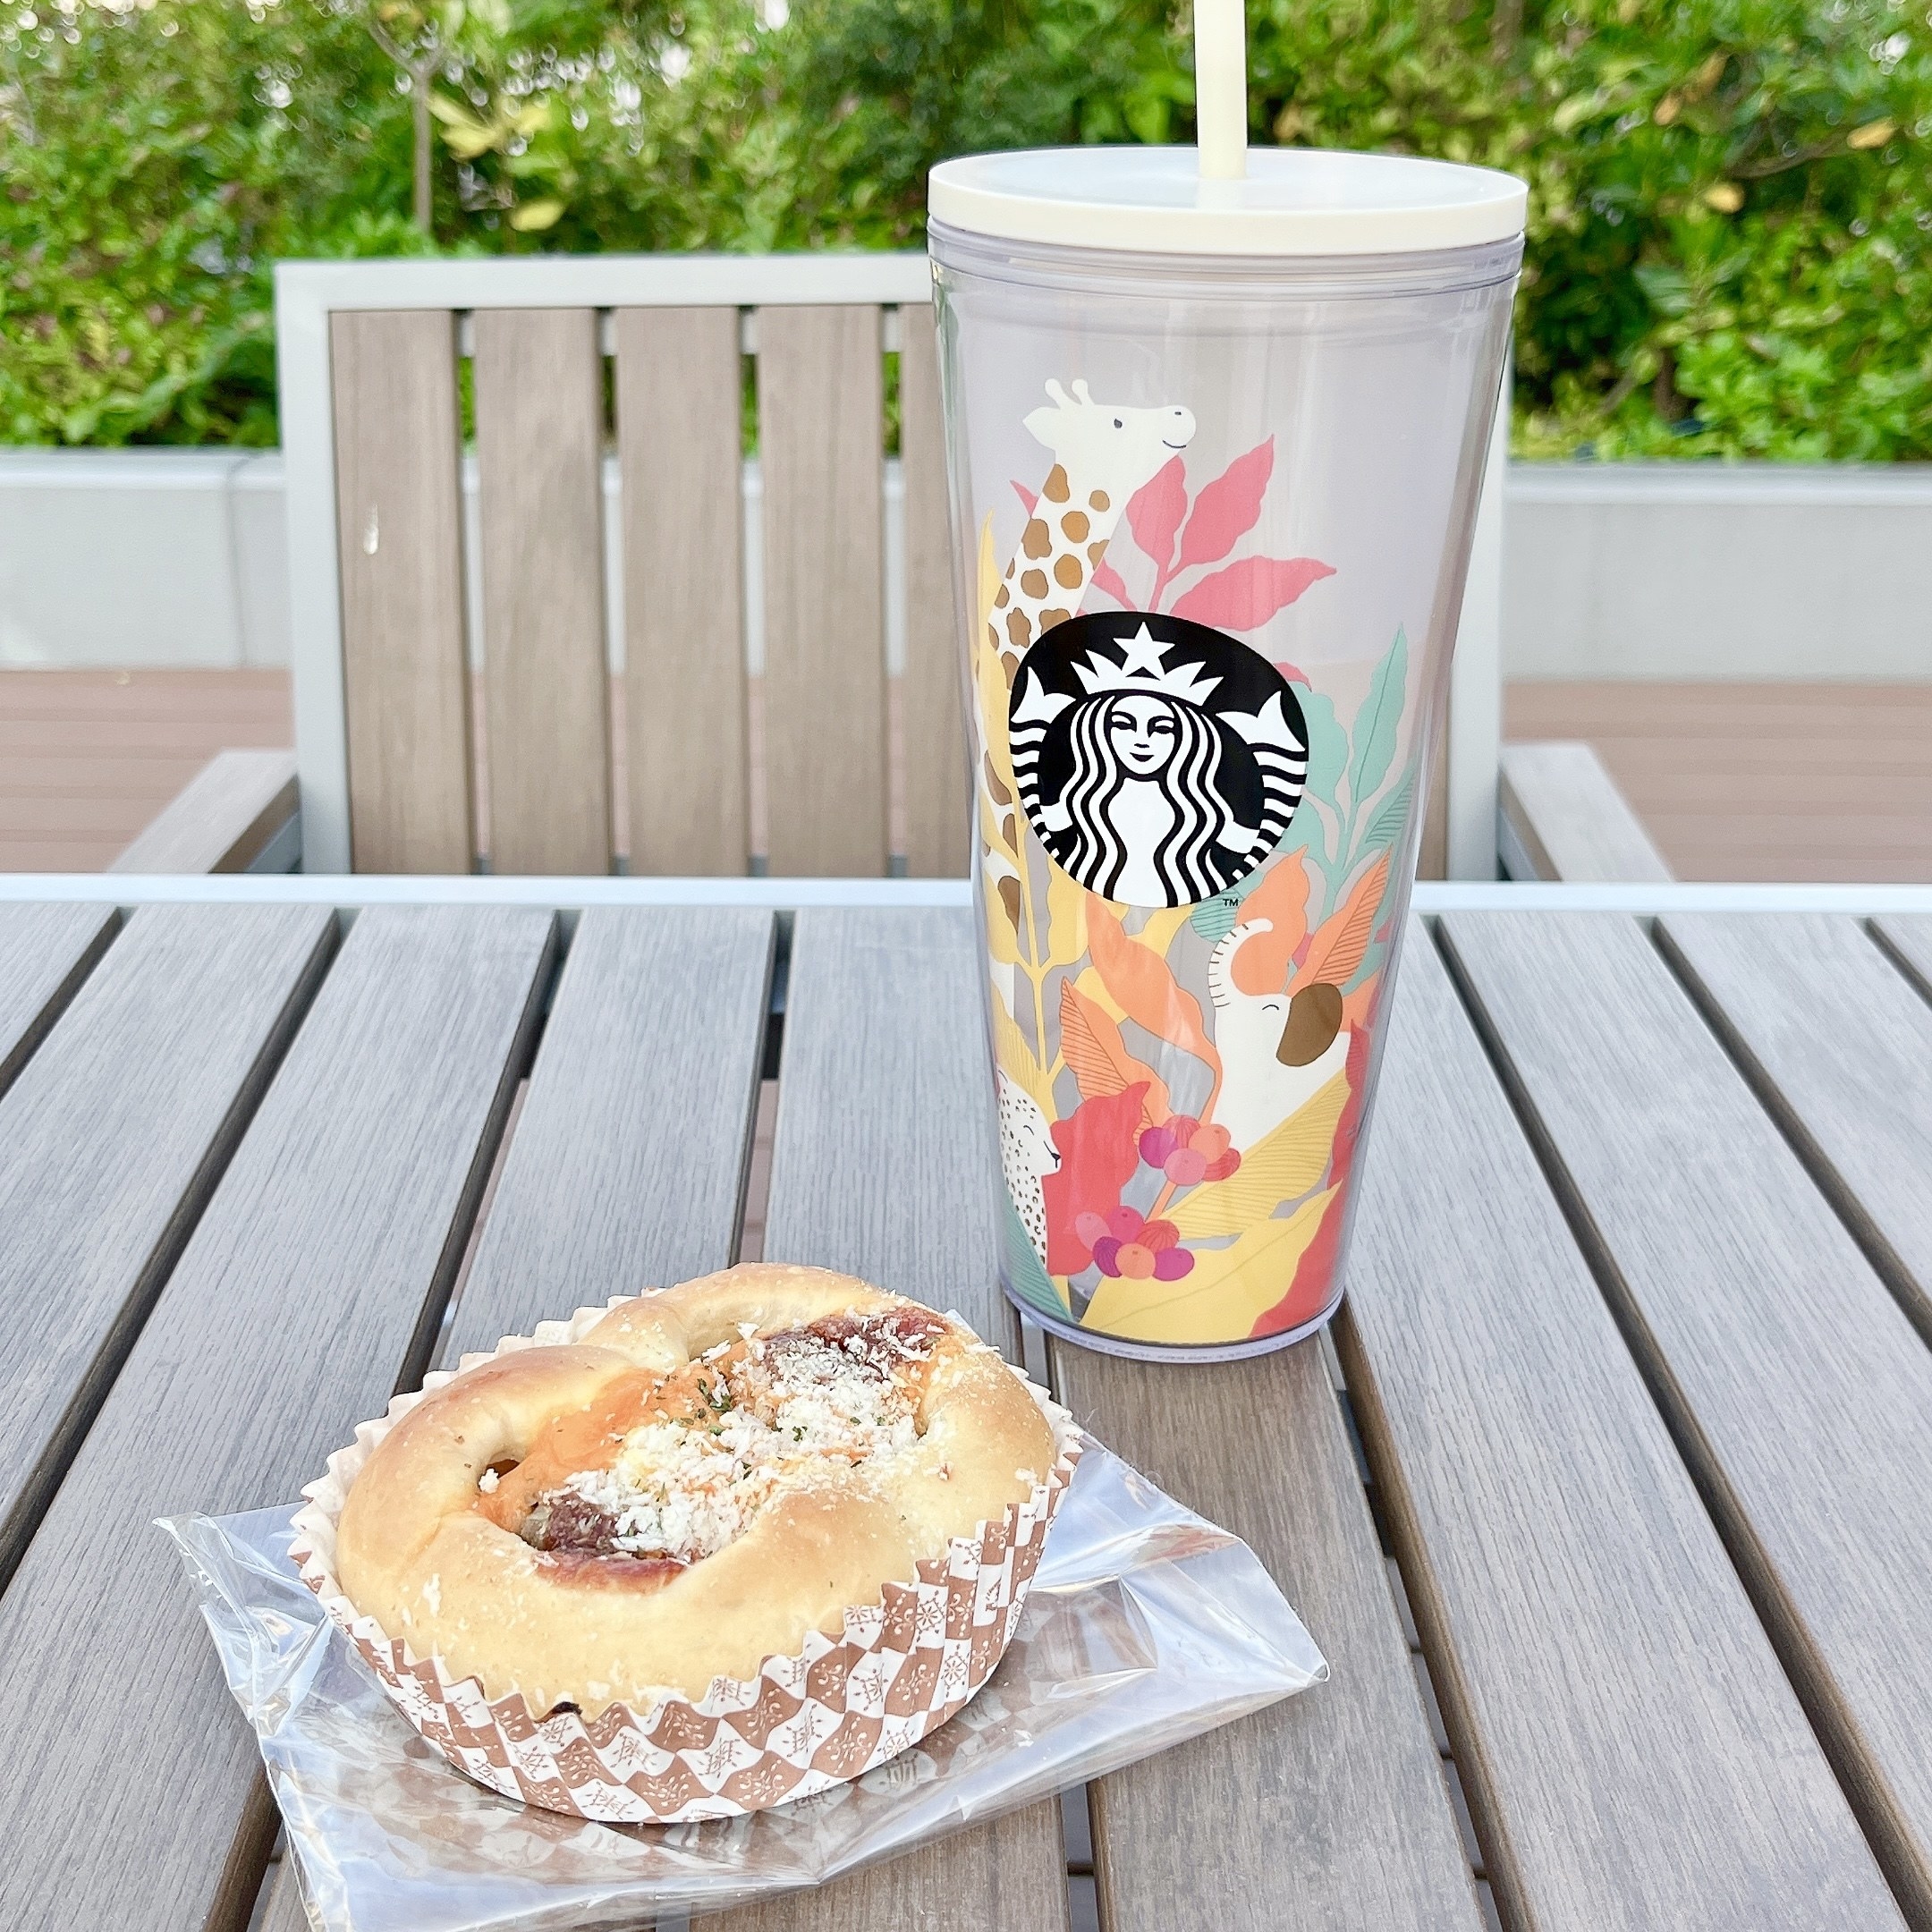 Starbucks Coffee（スターバックスコーヒー）のおすすめタンブラー「コールドカップタンブラーハッピージラフ591ml」